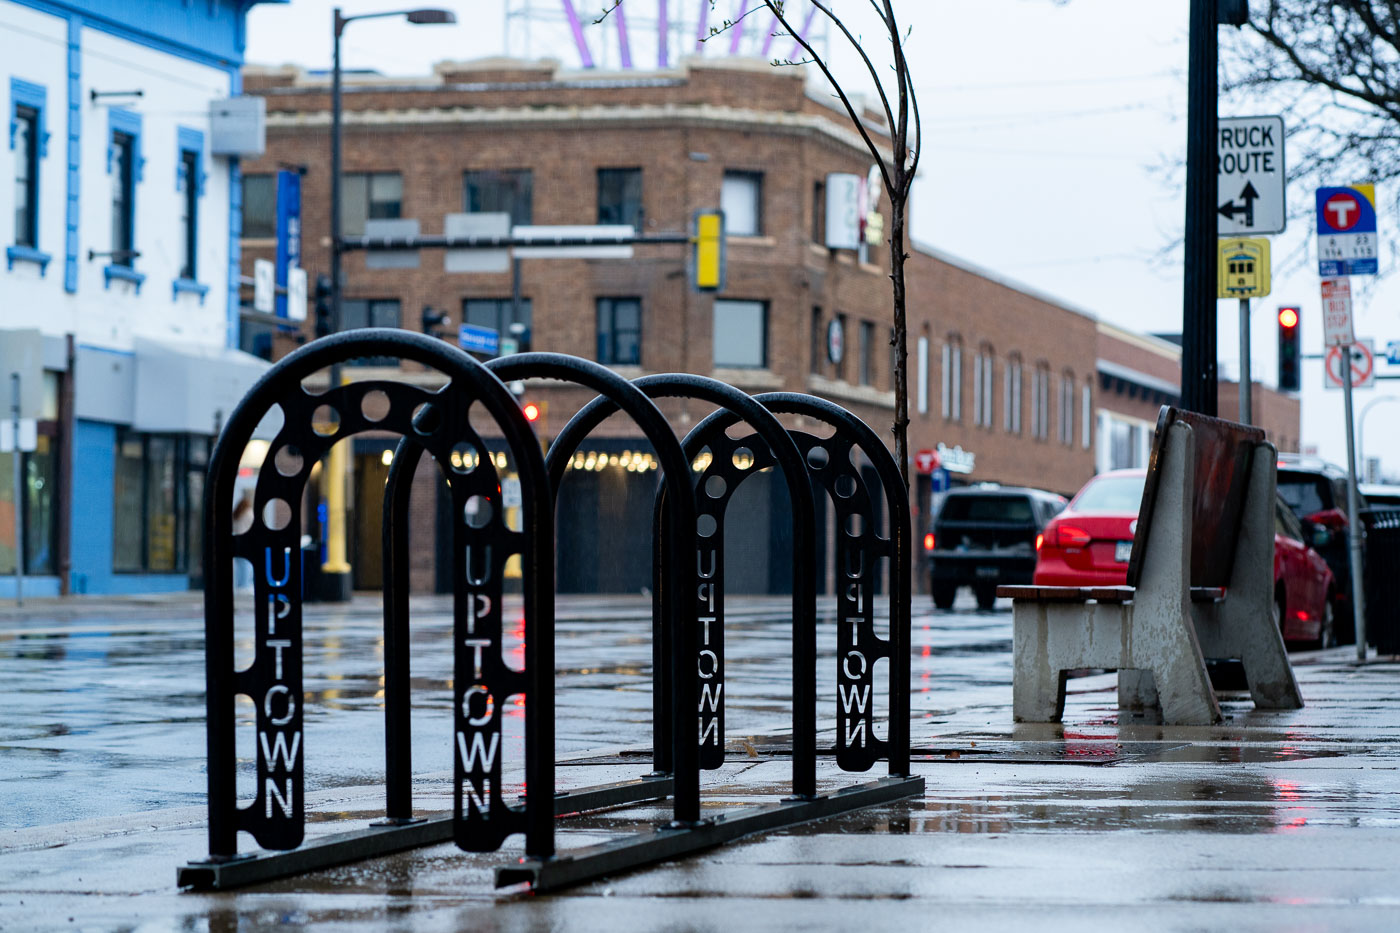 Bike racks in Uptown Minneapolis